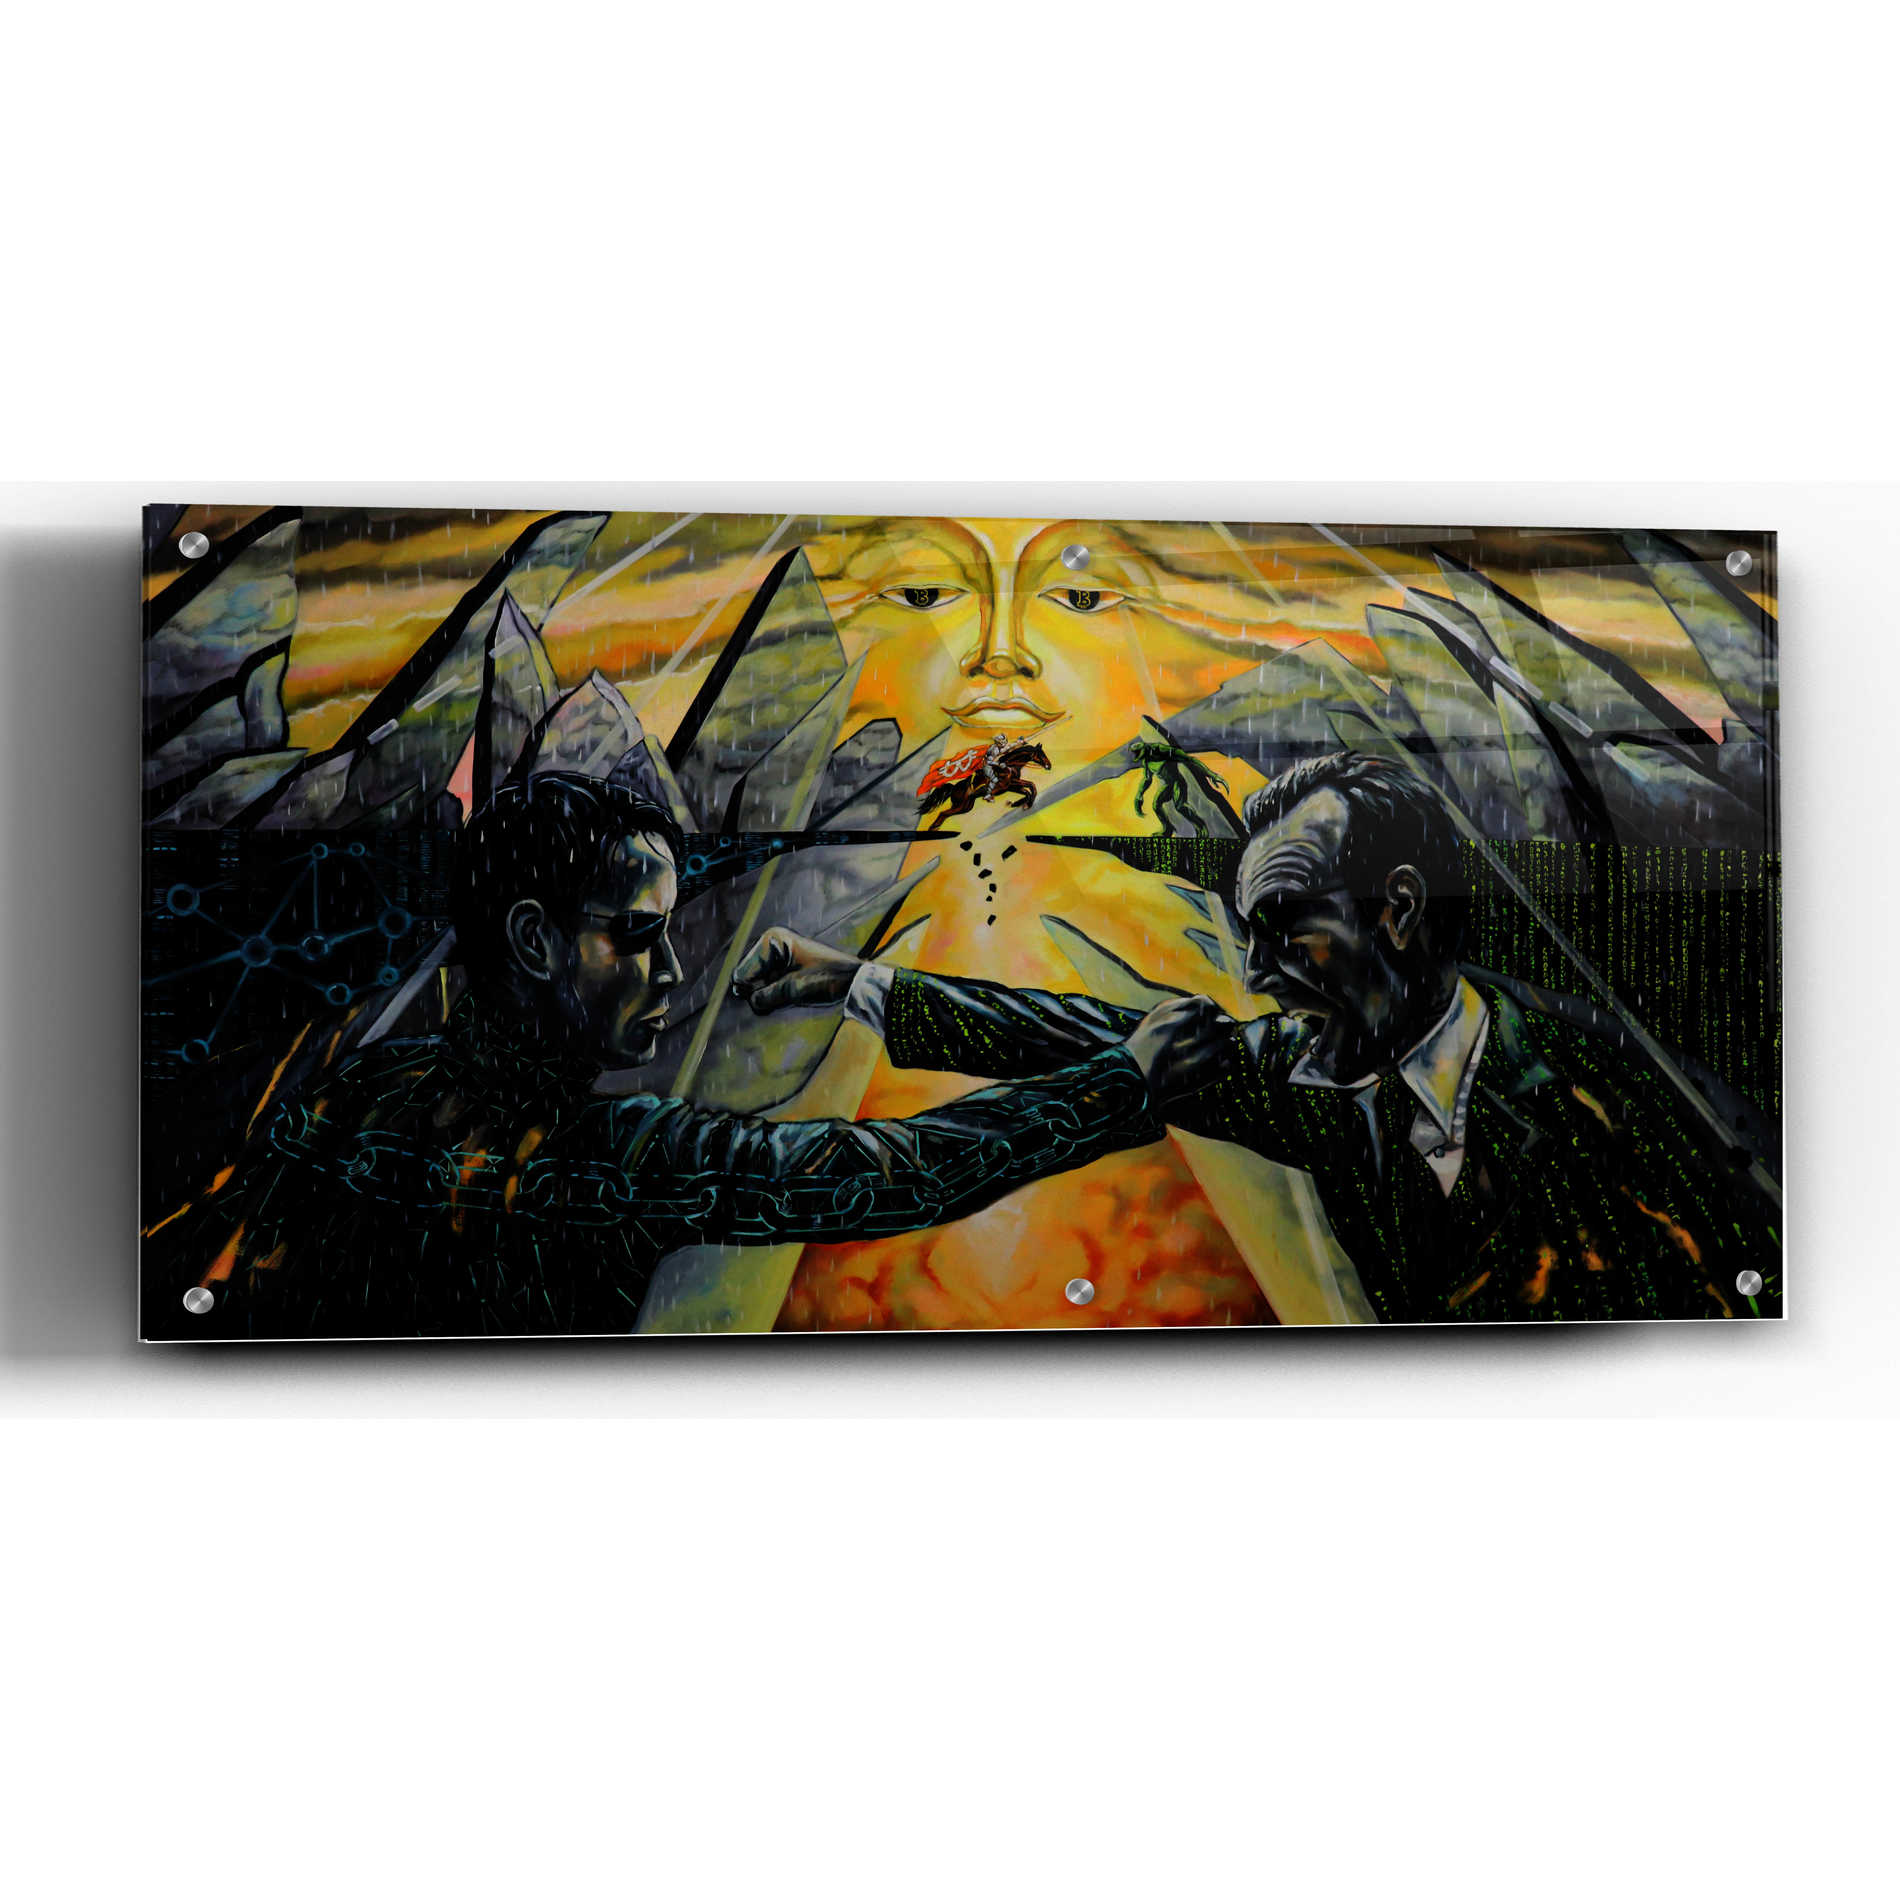 Epic Art 'Battle' by Jan Kasparec, Acrylic Glass Wall Art,24x12